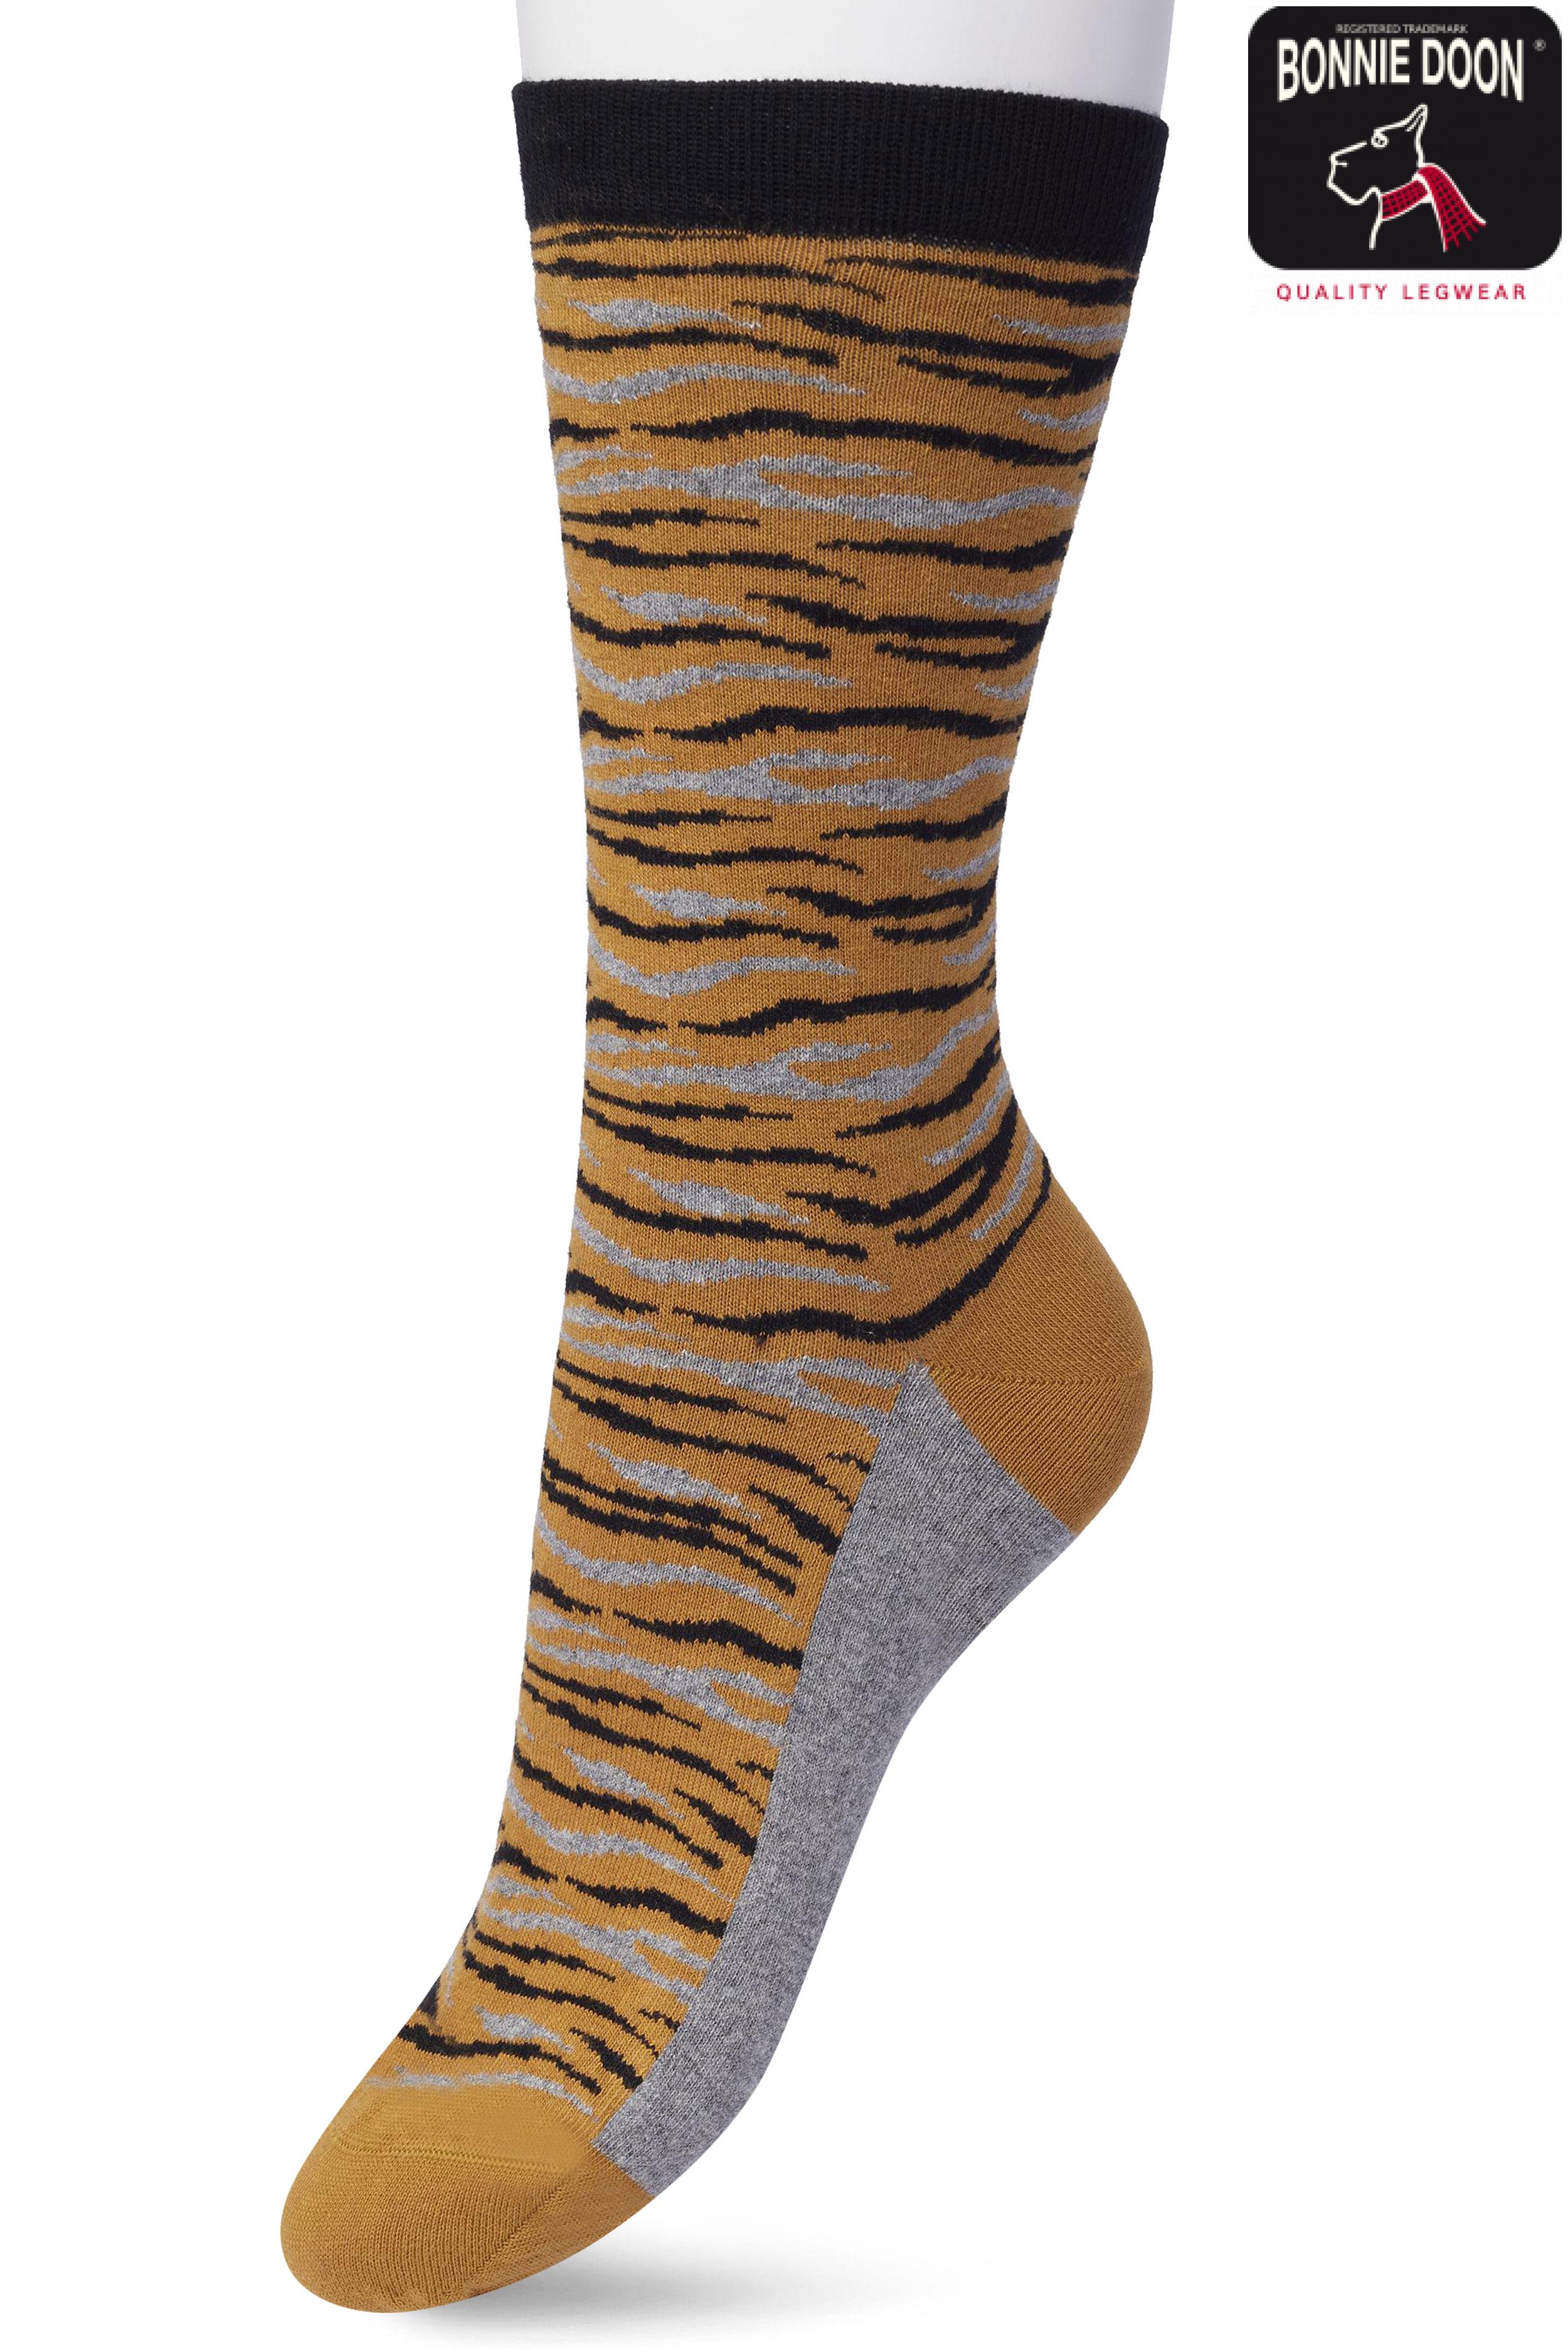 Zebra sock Sudan brown